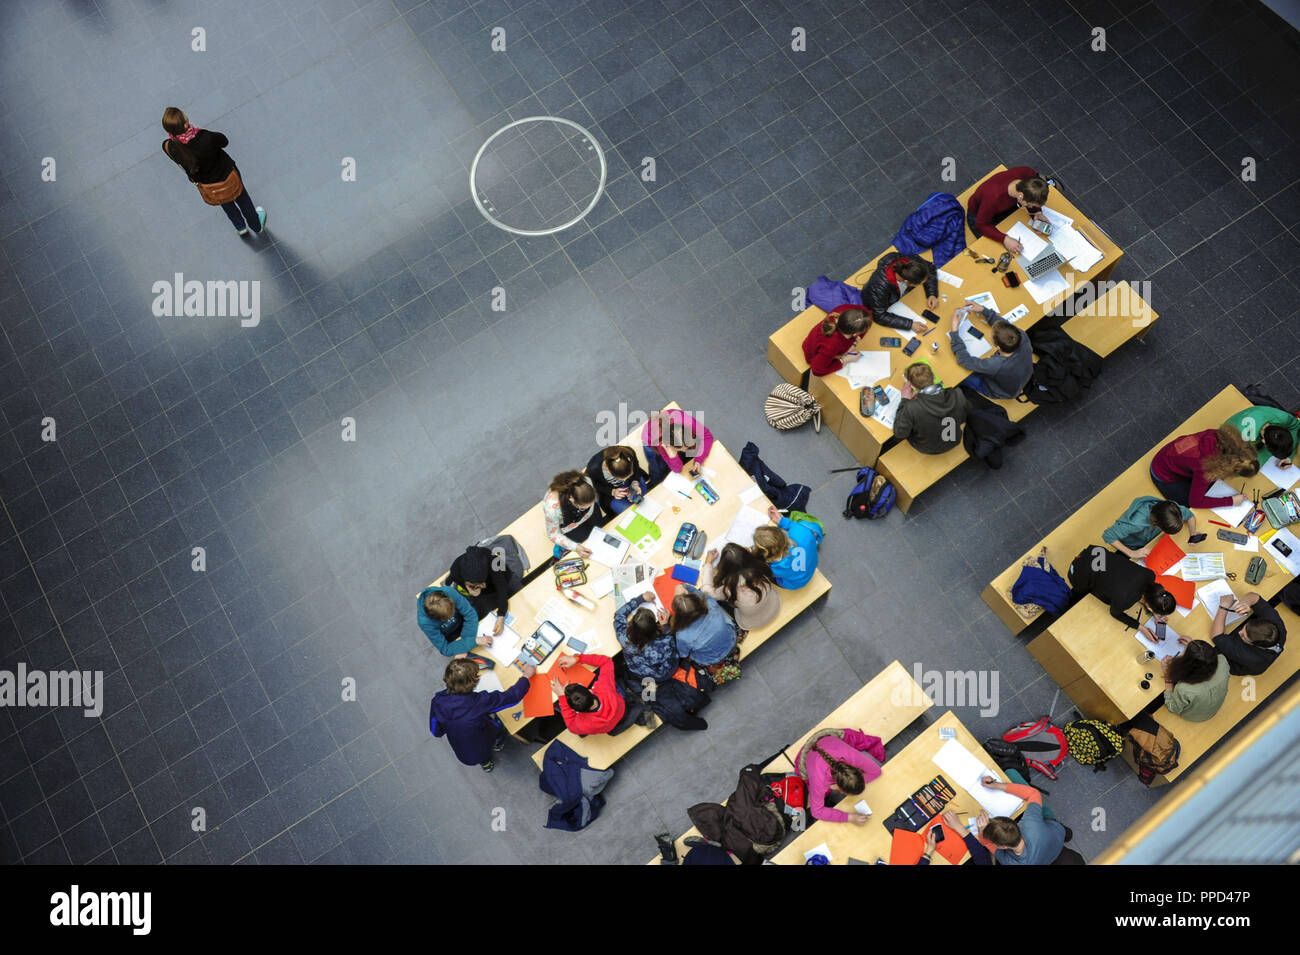 Giorno di Matematica presso il Campus di TU Garching: nell'immagine gli studenti stanno risolvendo problemi aritmetici nell' edificio della Facoltà di Matematica. Foto Stock